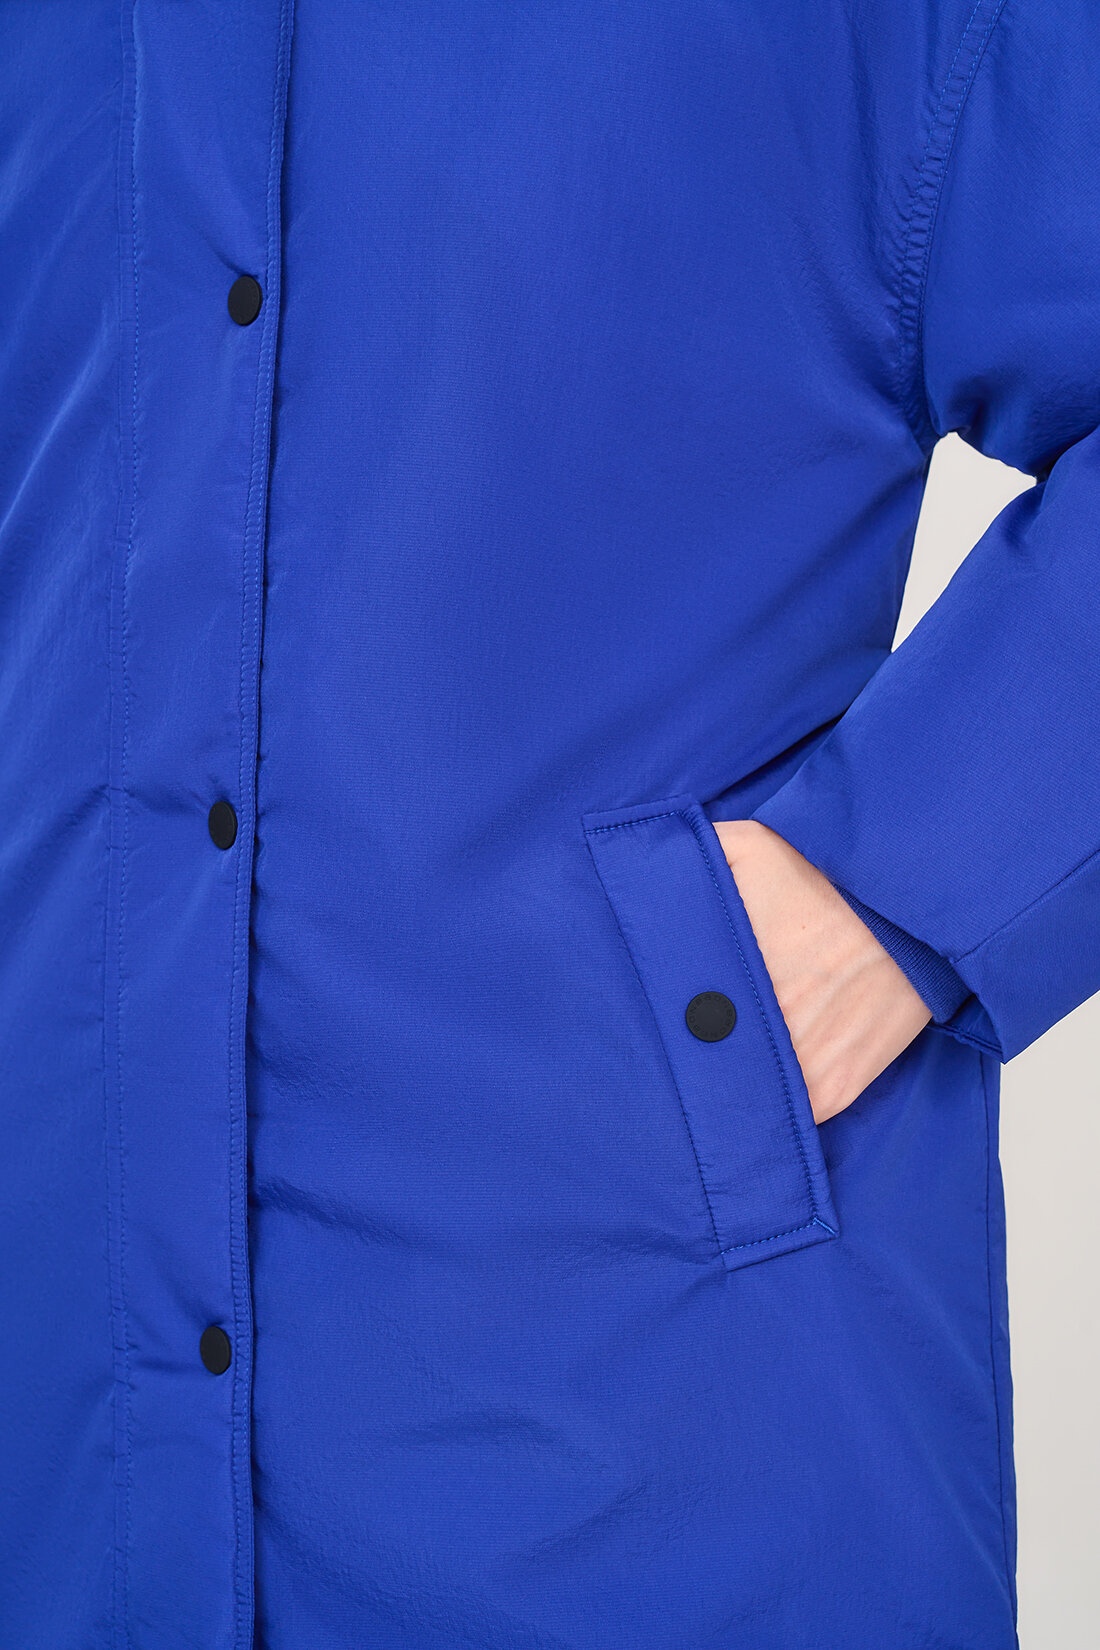 куртка Baon, демисезон/зима, удлиненная, силуэт прямой, капюшон, карманы, пояс/ремень, ветрозащитная, утепленная, манжеты, размер L, синий - фотография № 8